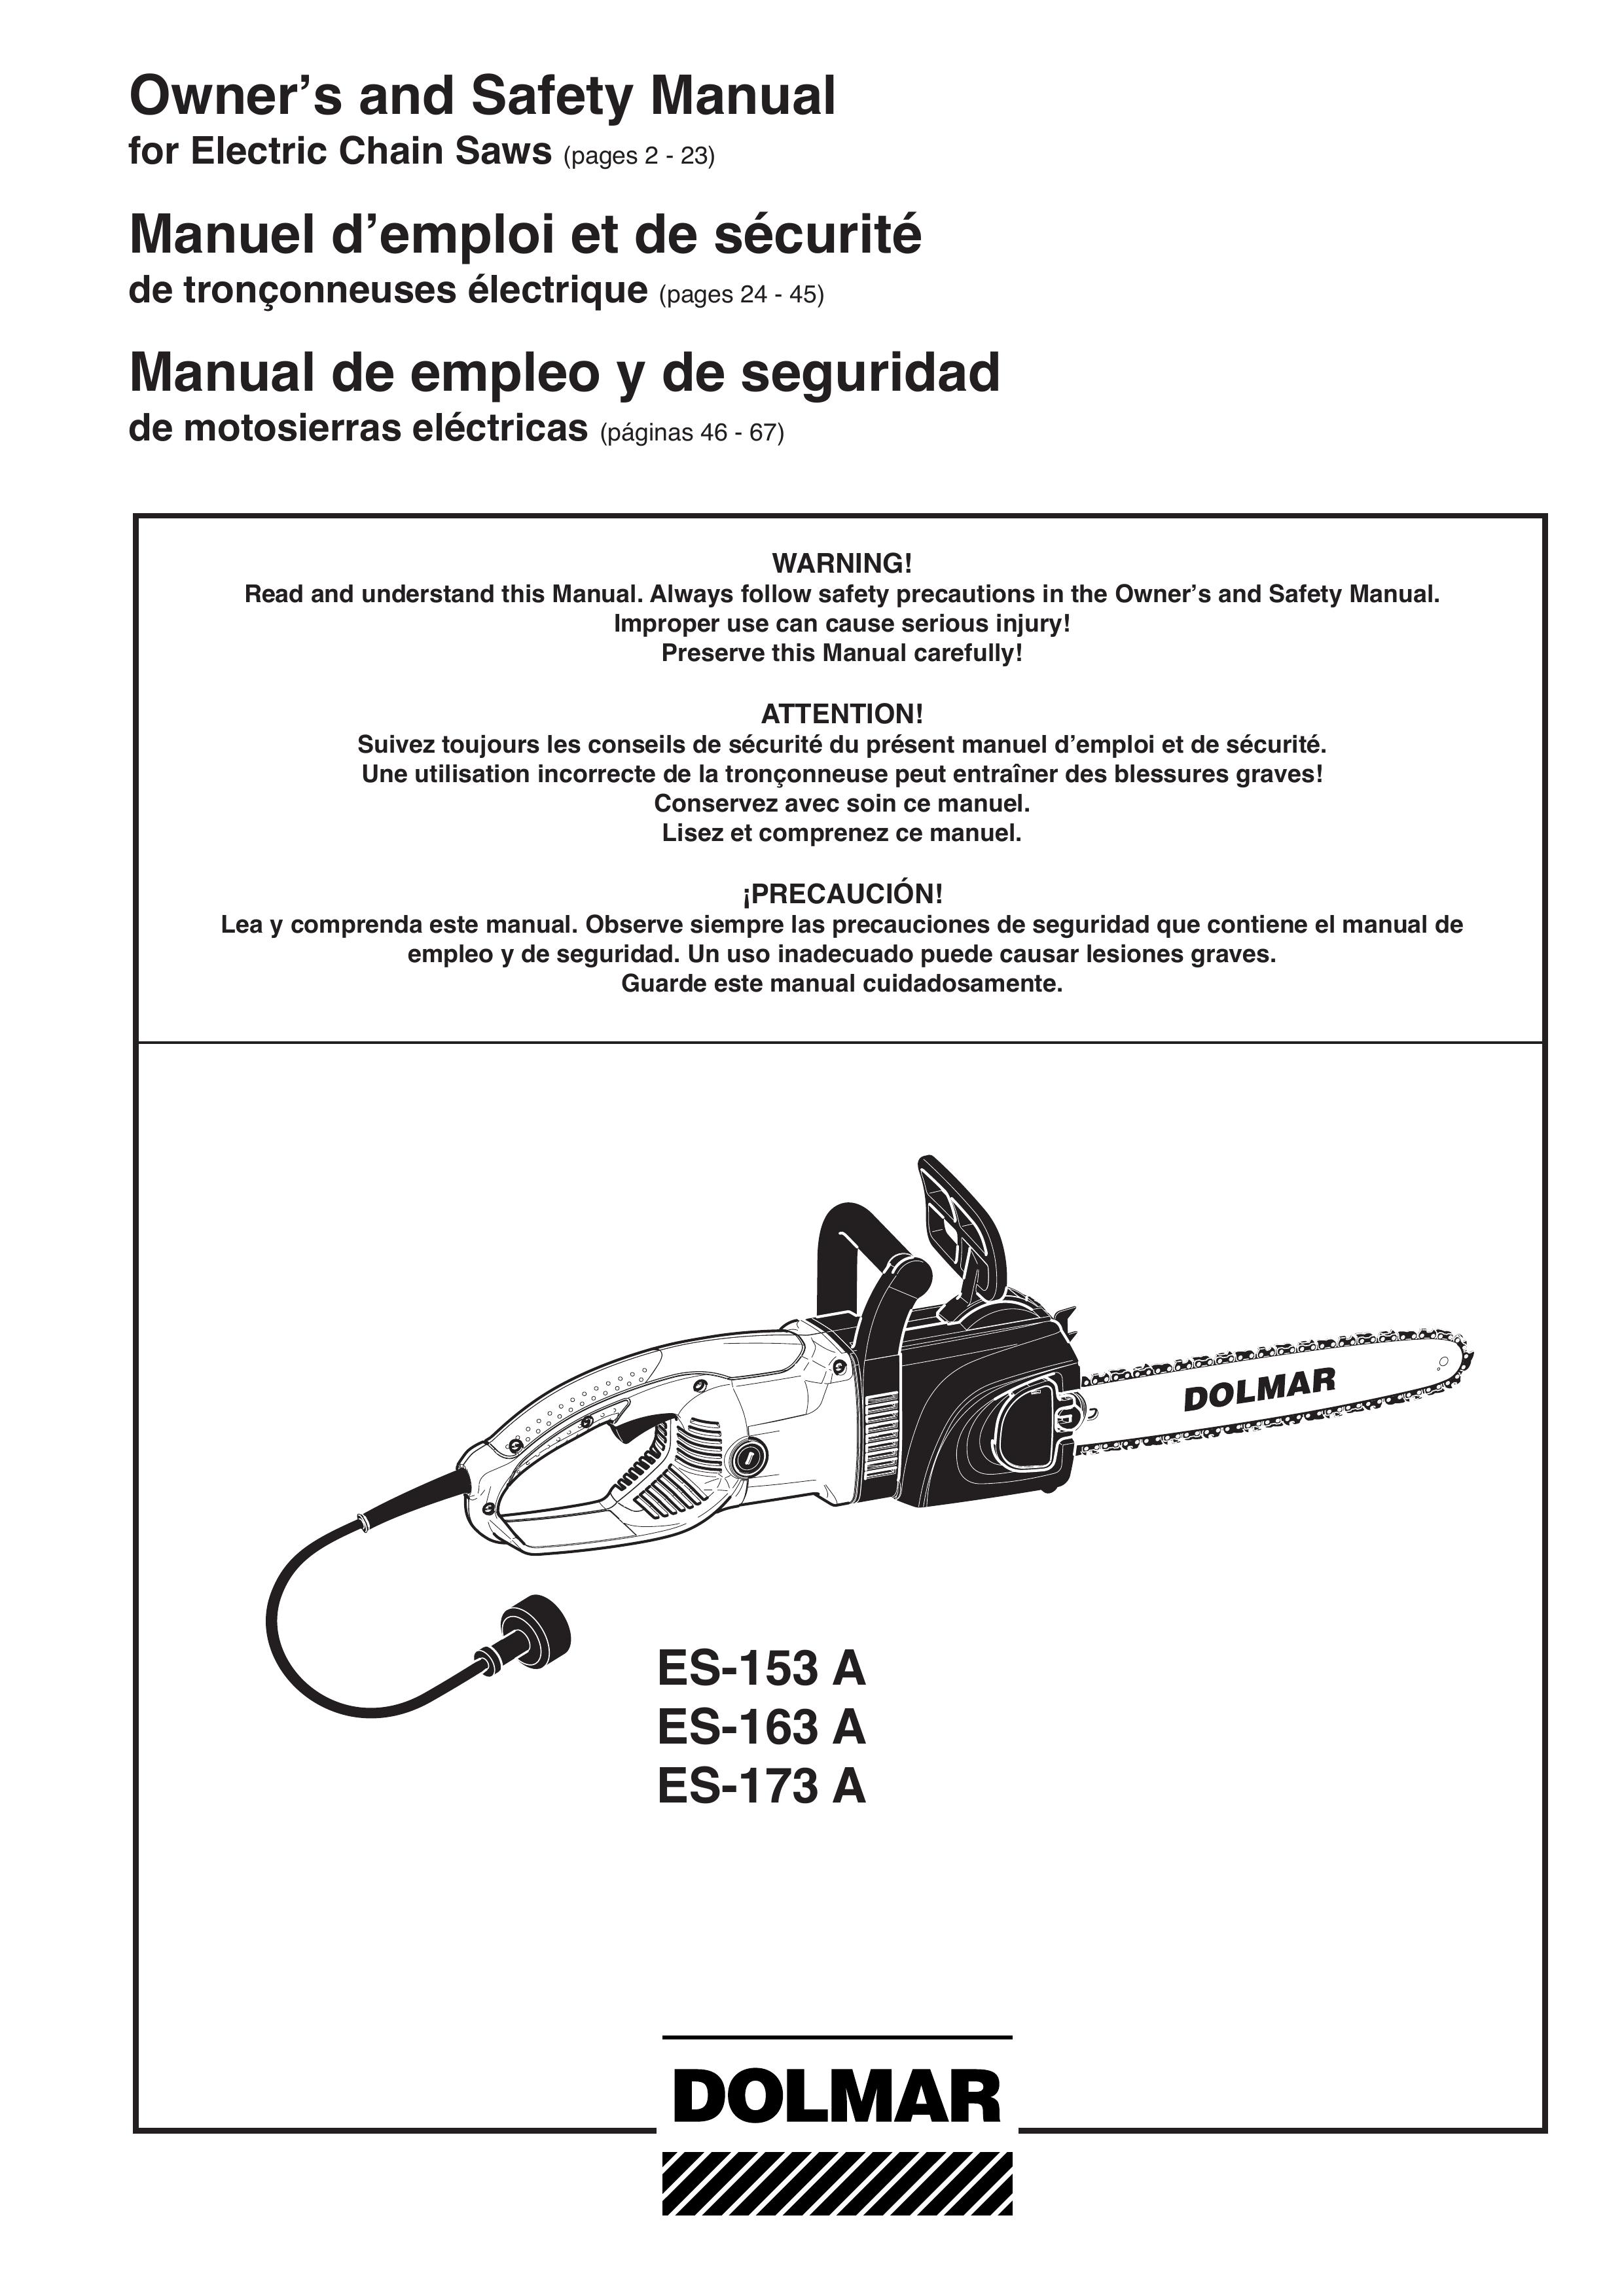 Dolmar ES-173 A Chainsaw User Manual